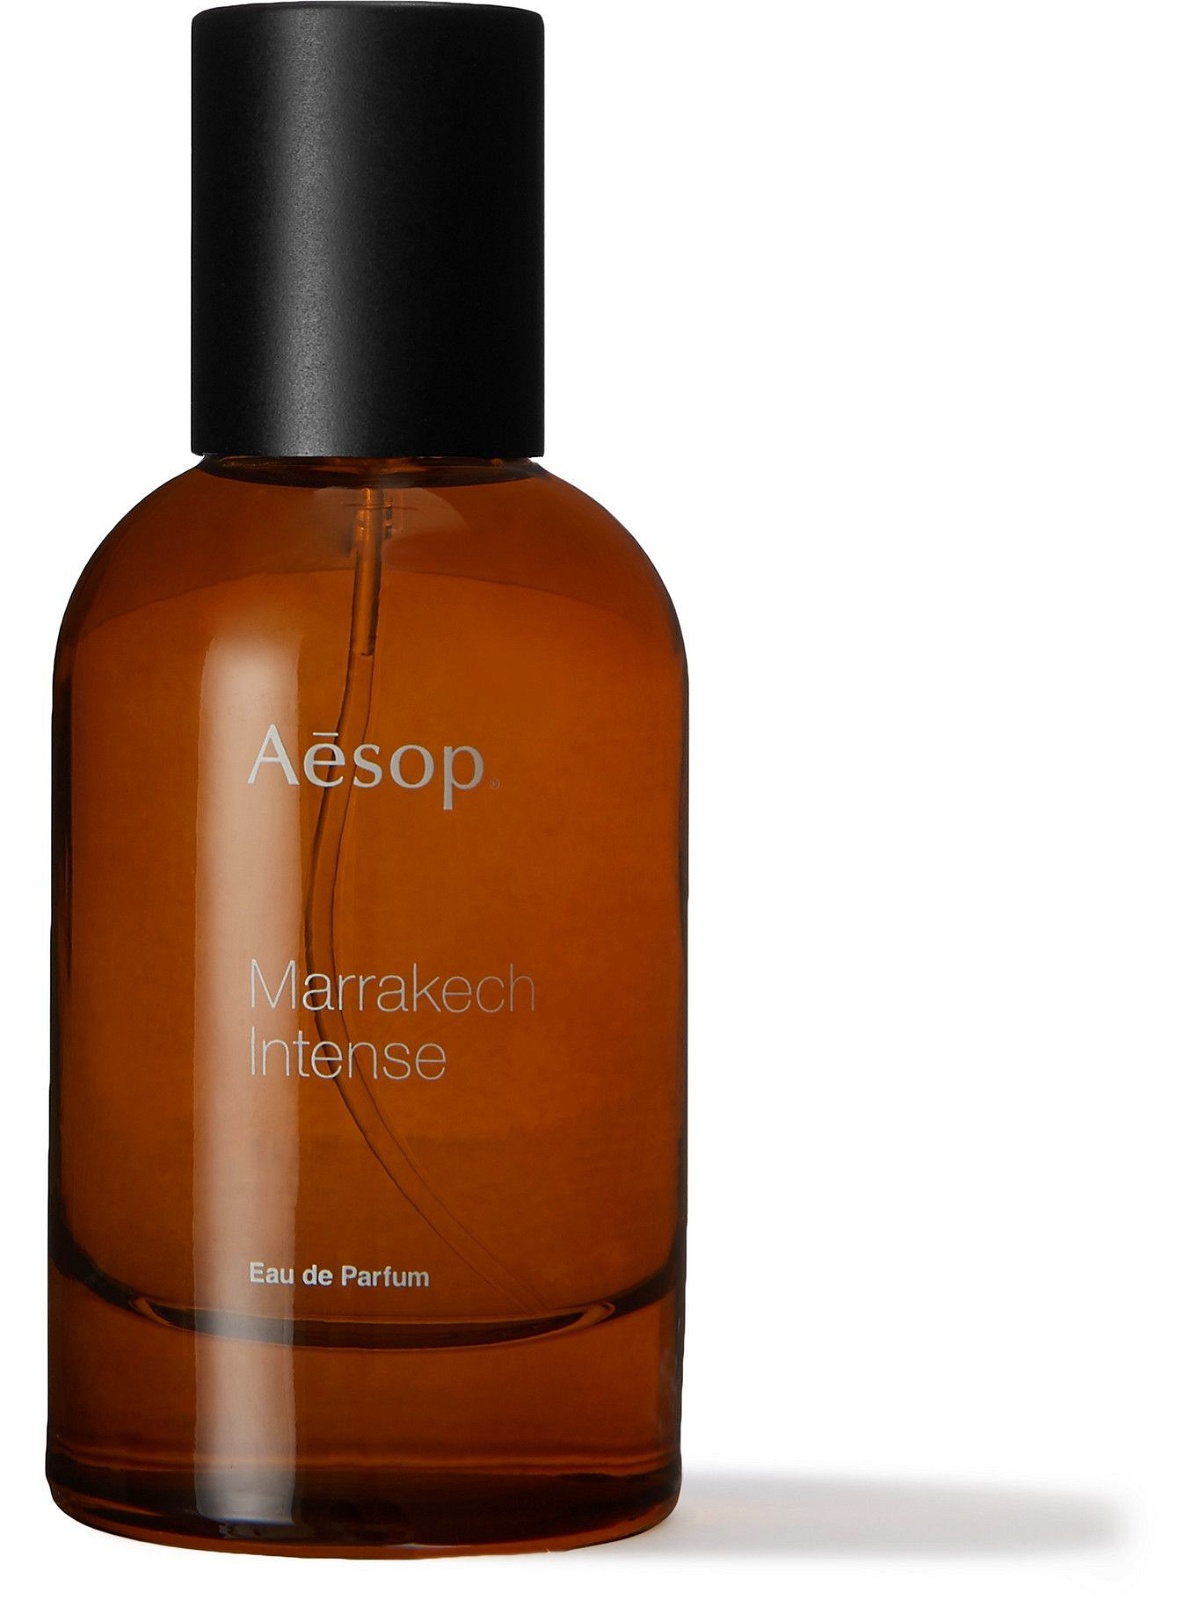 Aesop - Marrakech Intense Eau de Parfum, 50ml Aesop